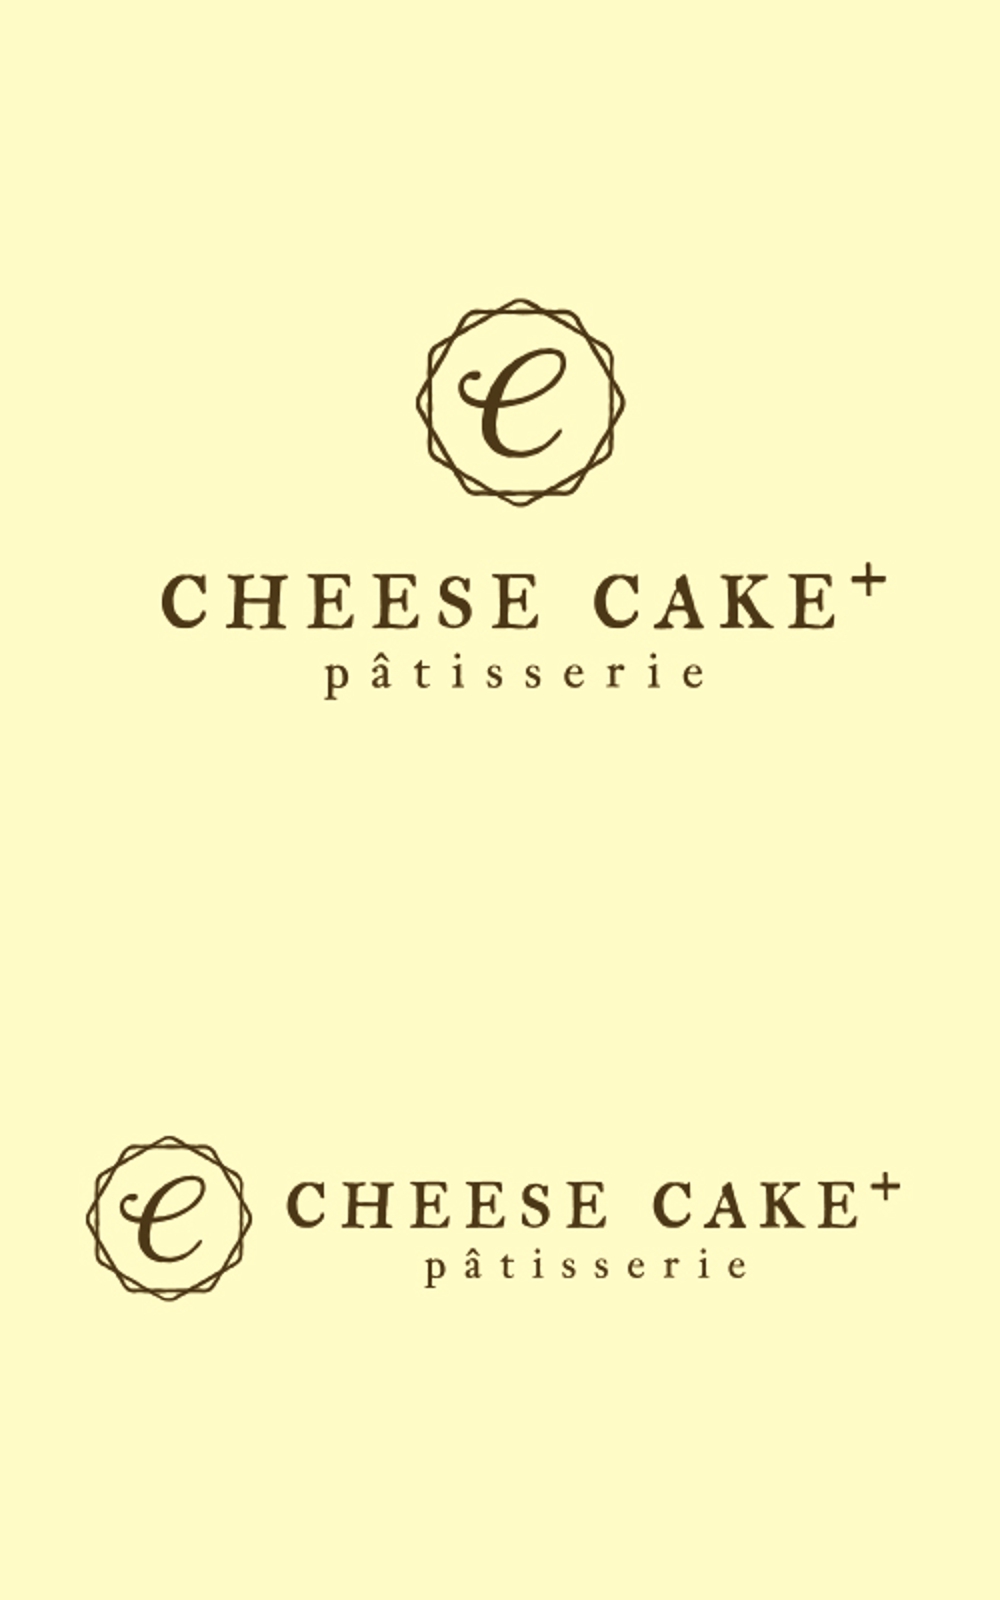 チーズケーキをメインにしたケーキ屋さんロゴ